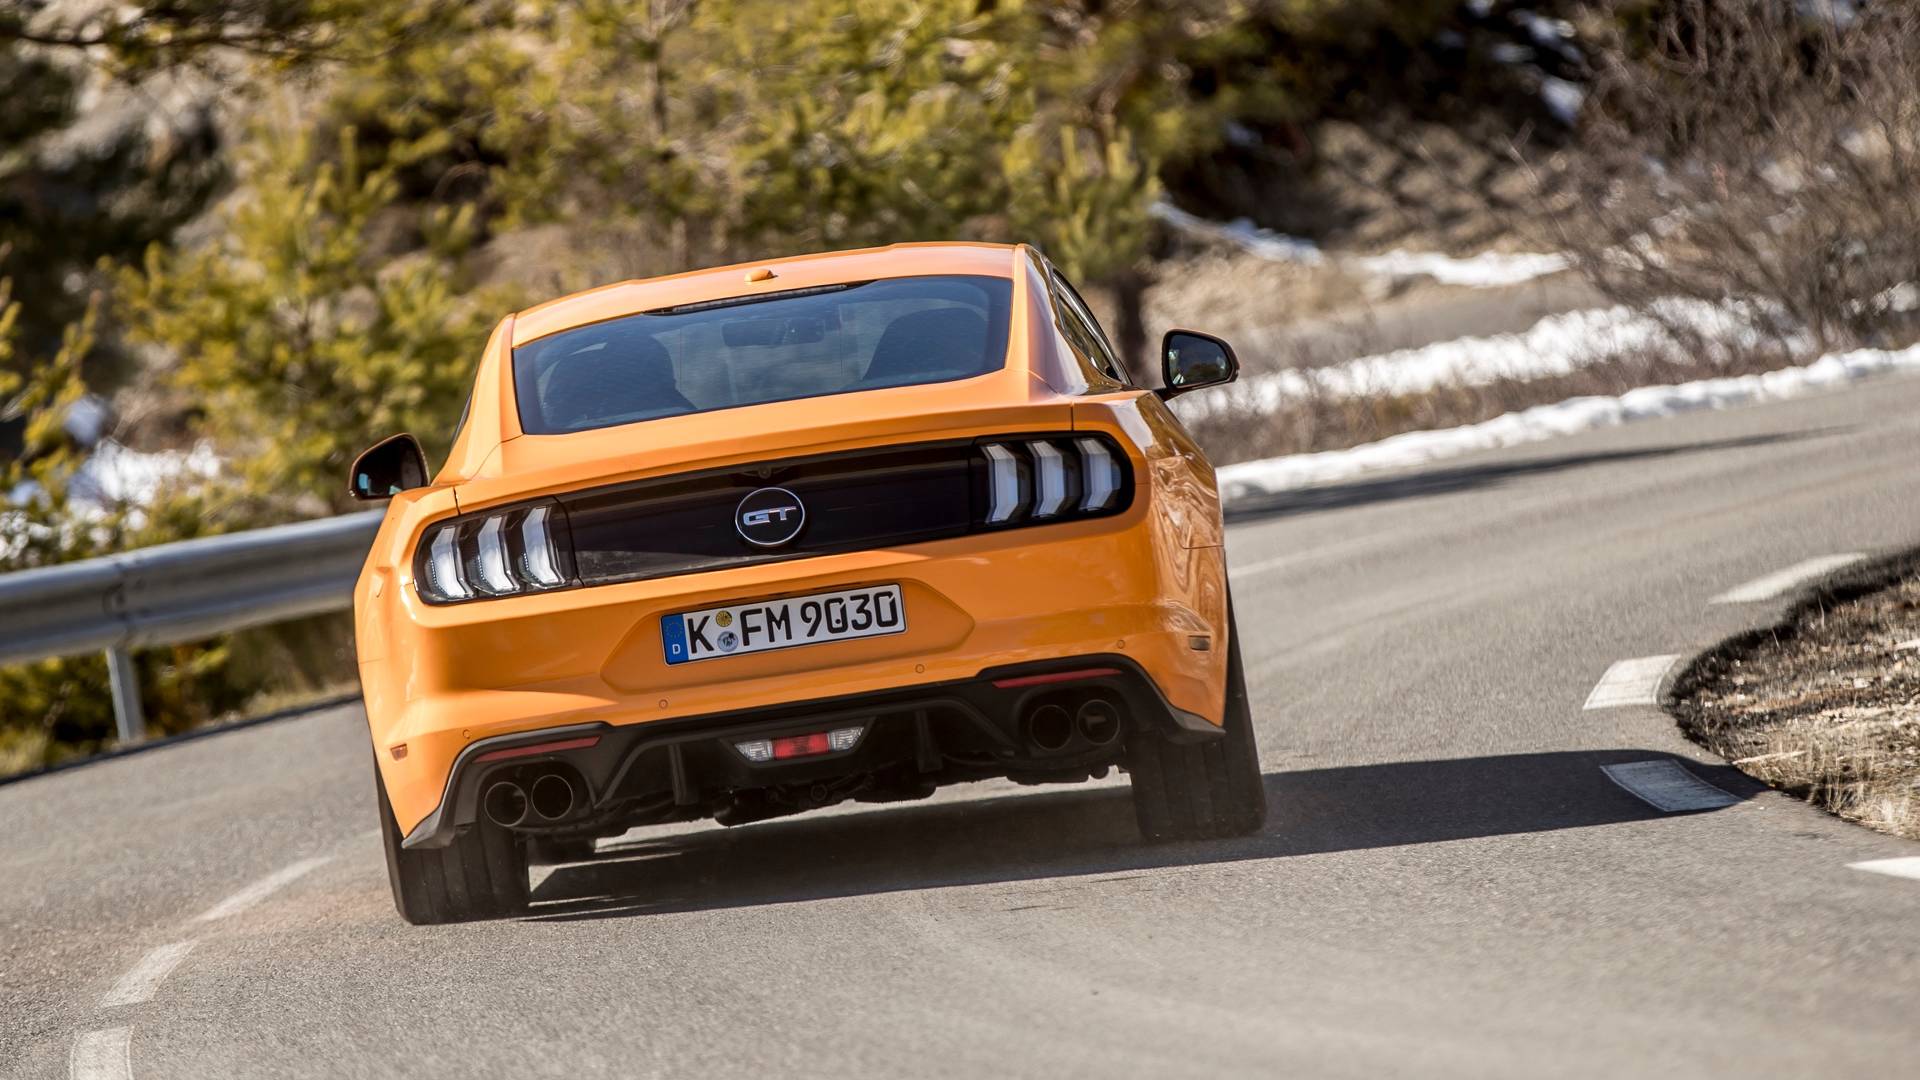 Habrá un Ford Mustang turbo más potente, primeros detalles